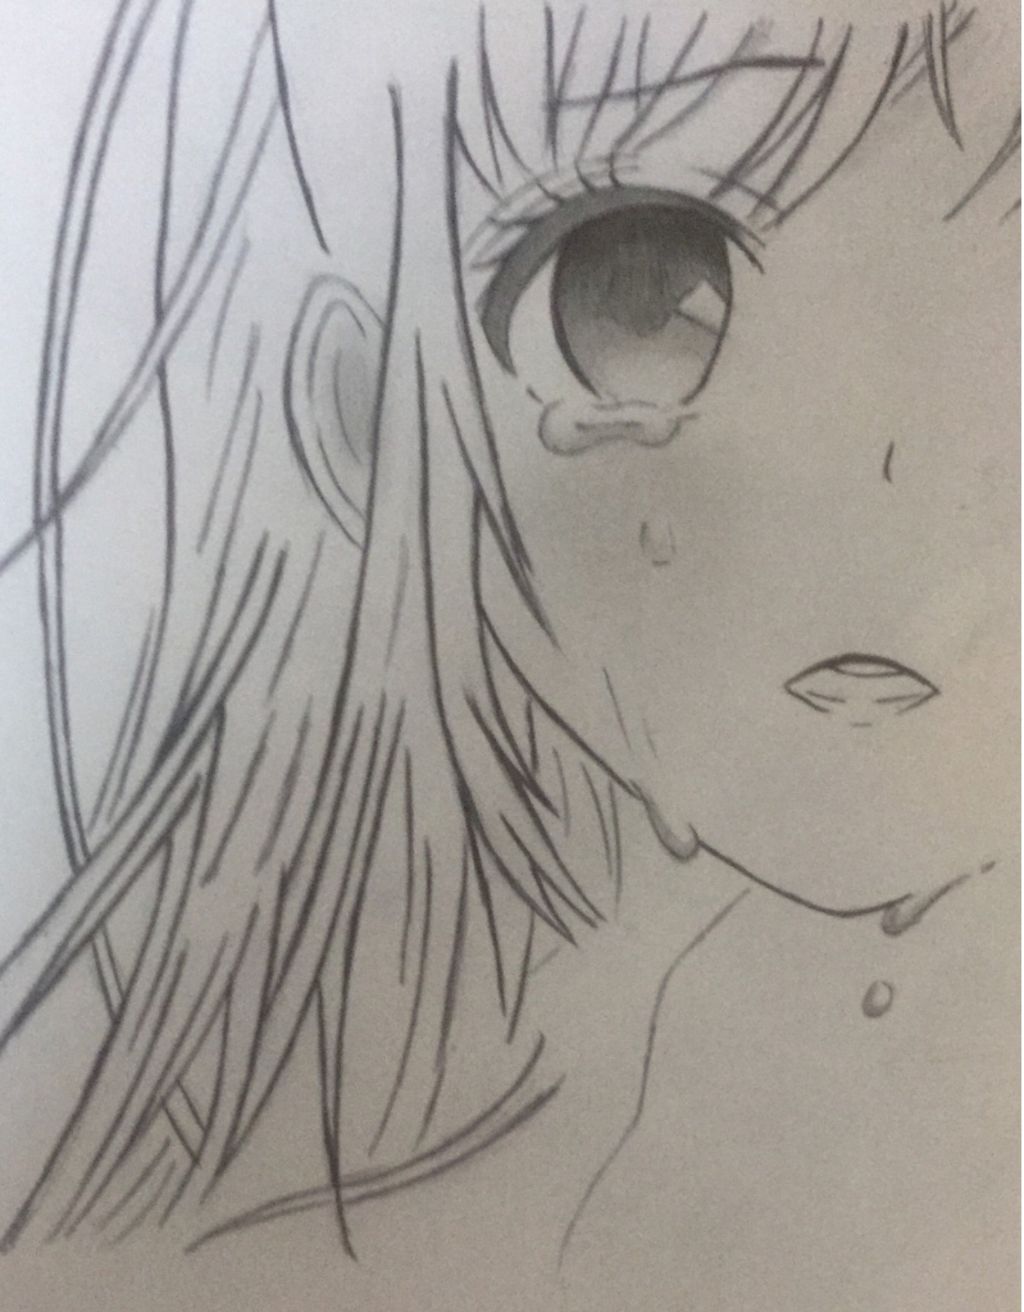 vẽ tranh chì anime khóc (nước mắt màu đỏ nha) ko đẹp báo vi phạm ...